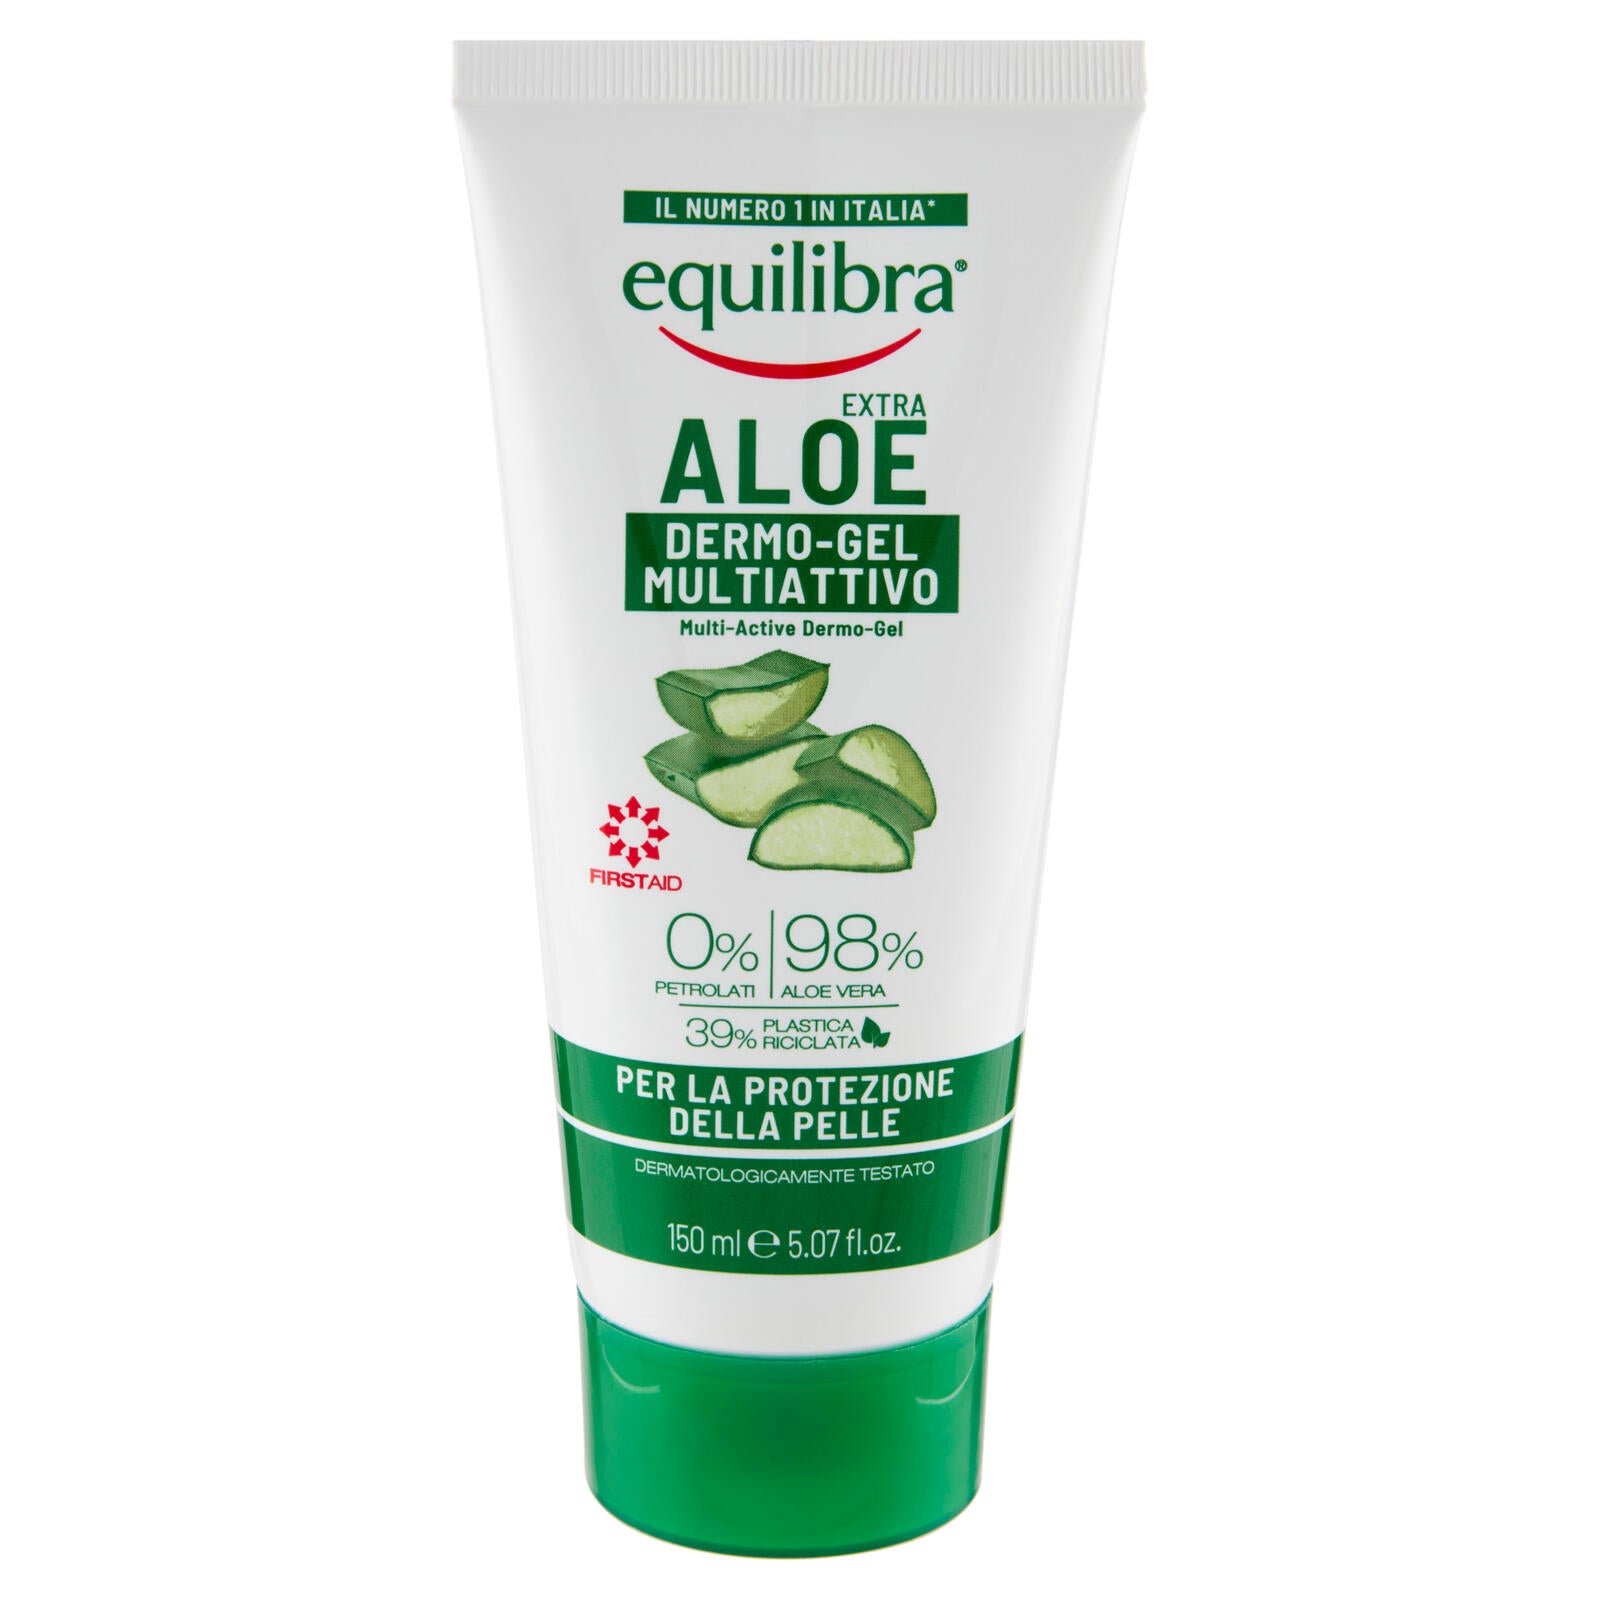 equilibra Aloe Extra Dermo-Gel Multiattivo per la Protezione della Pelle 150 ml